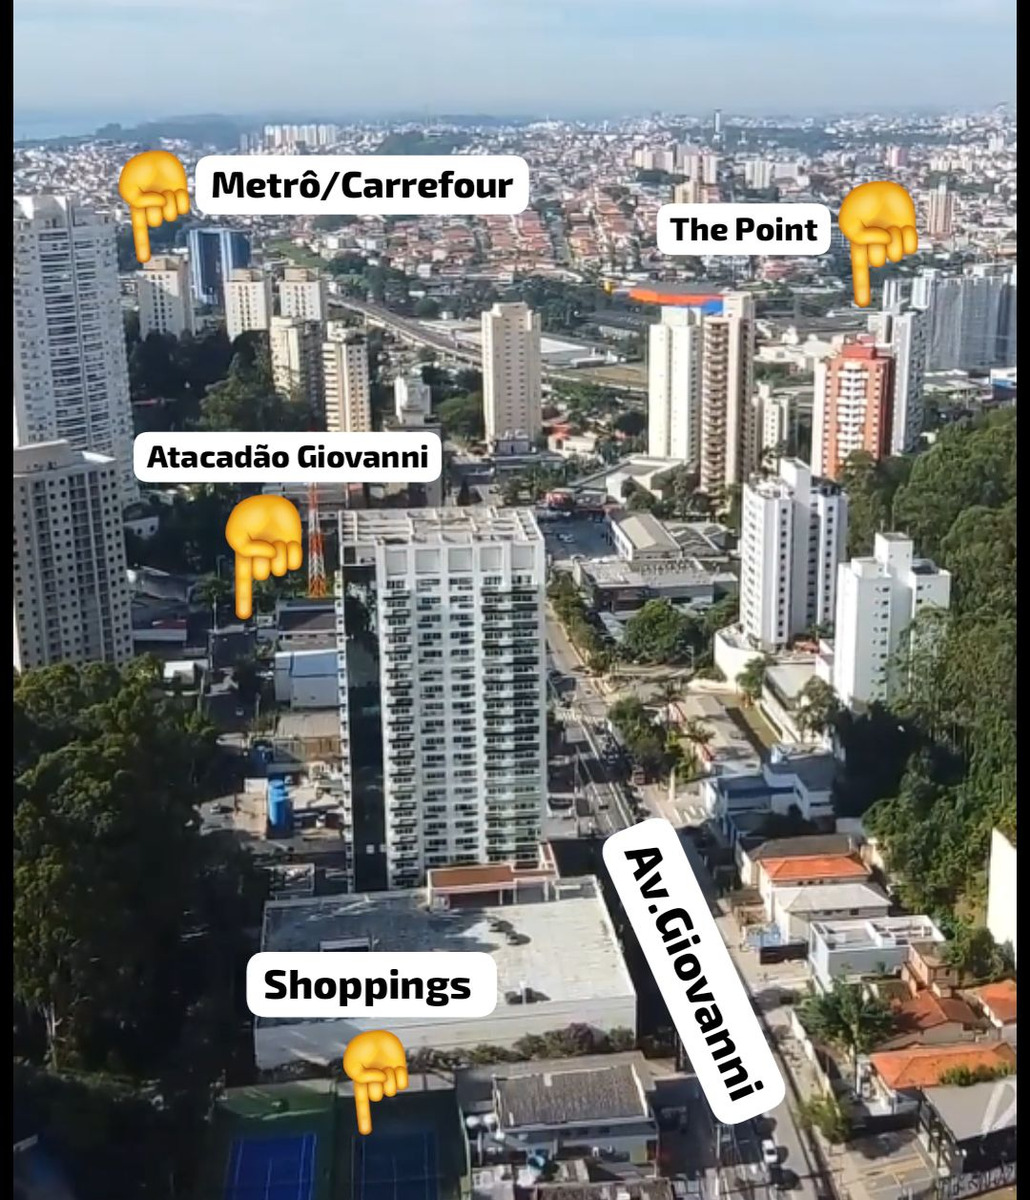 foto - São Paulo - Vila Andrade